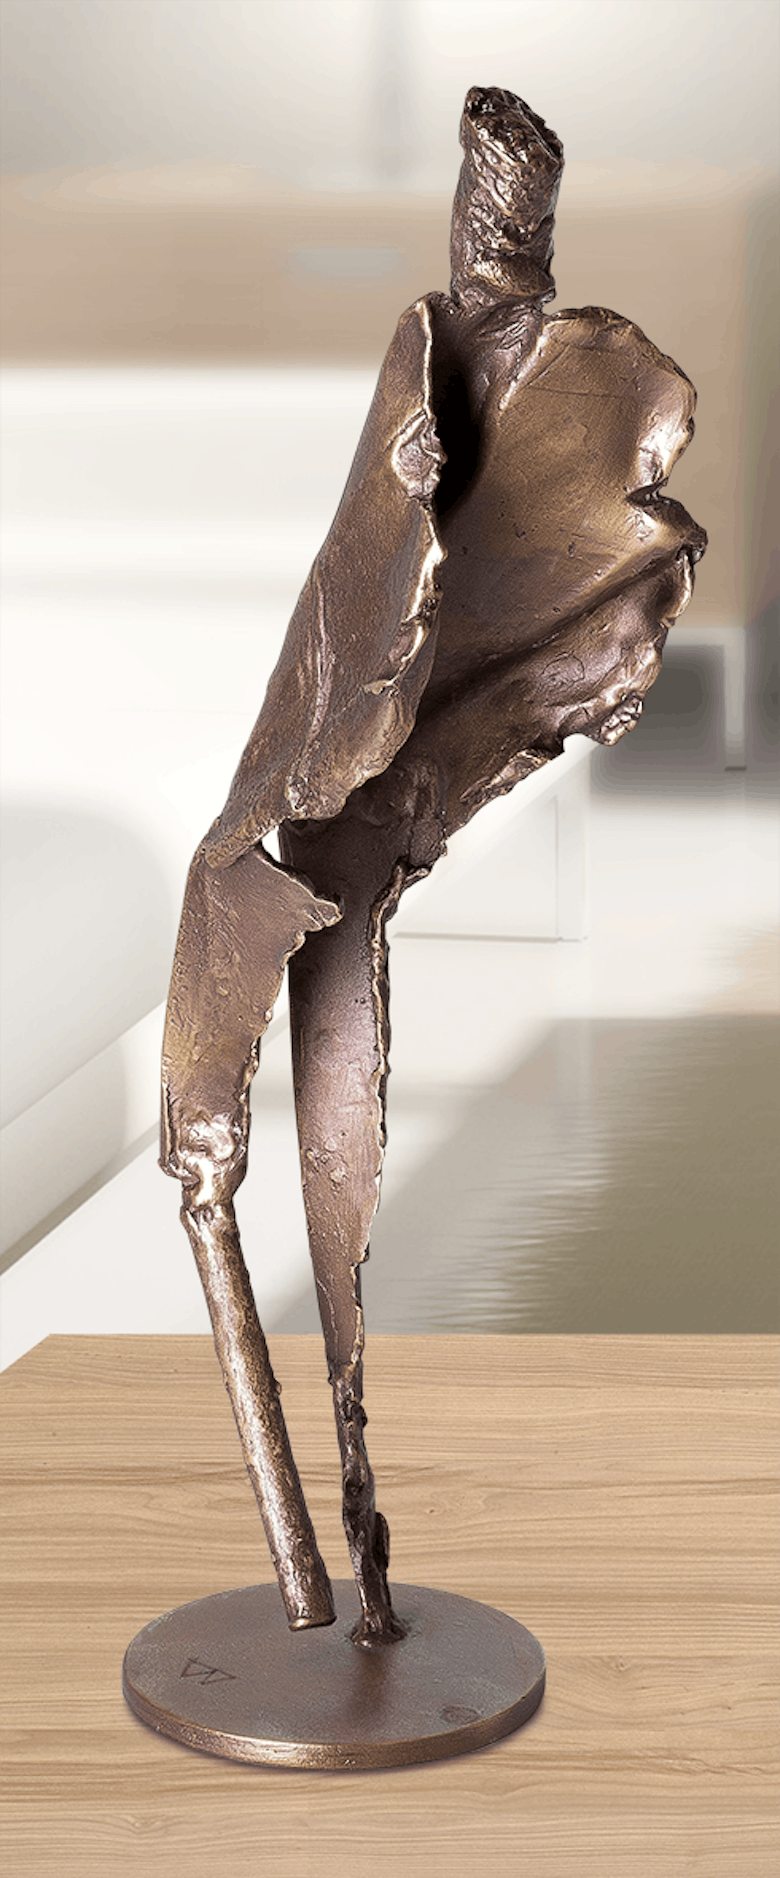 Bronzefigur Apologet von Ulrich Barnickel